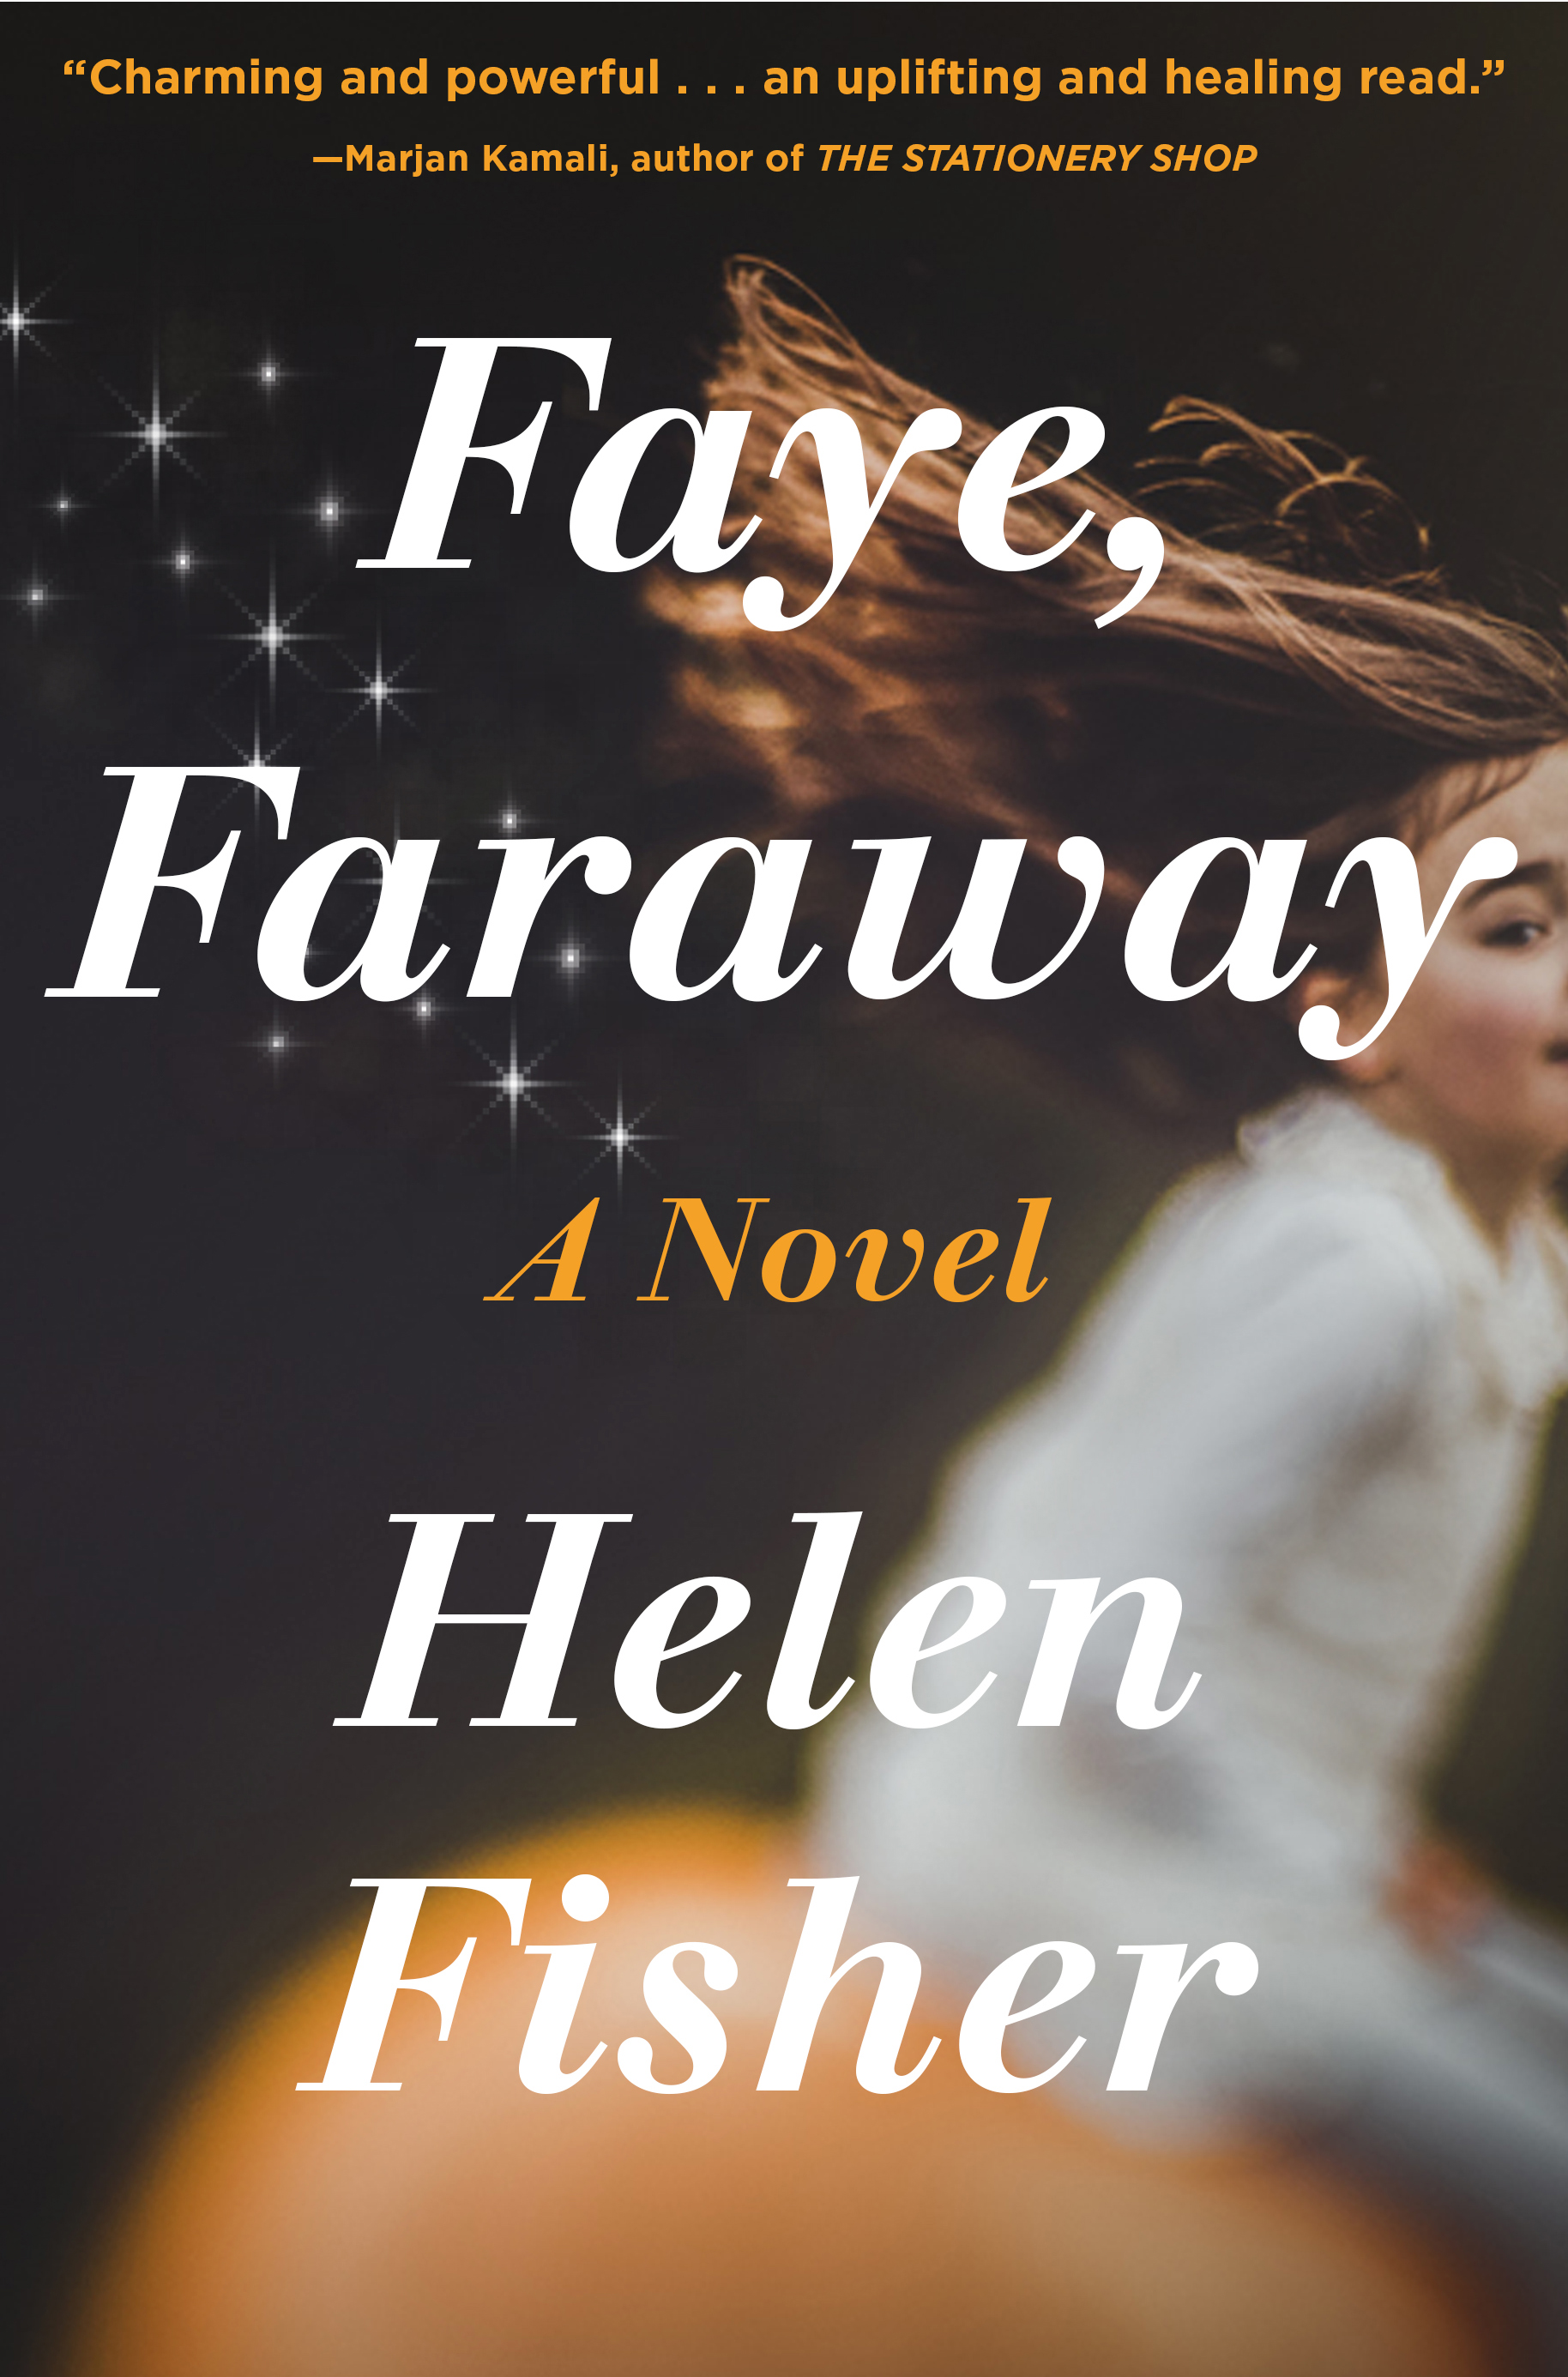 [EPUB] Faye, Faraway by Helen Fisher